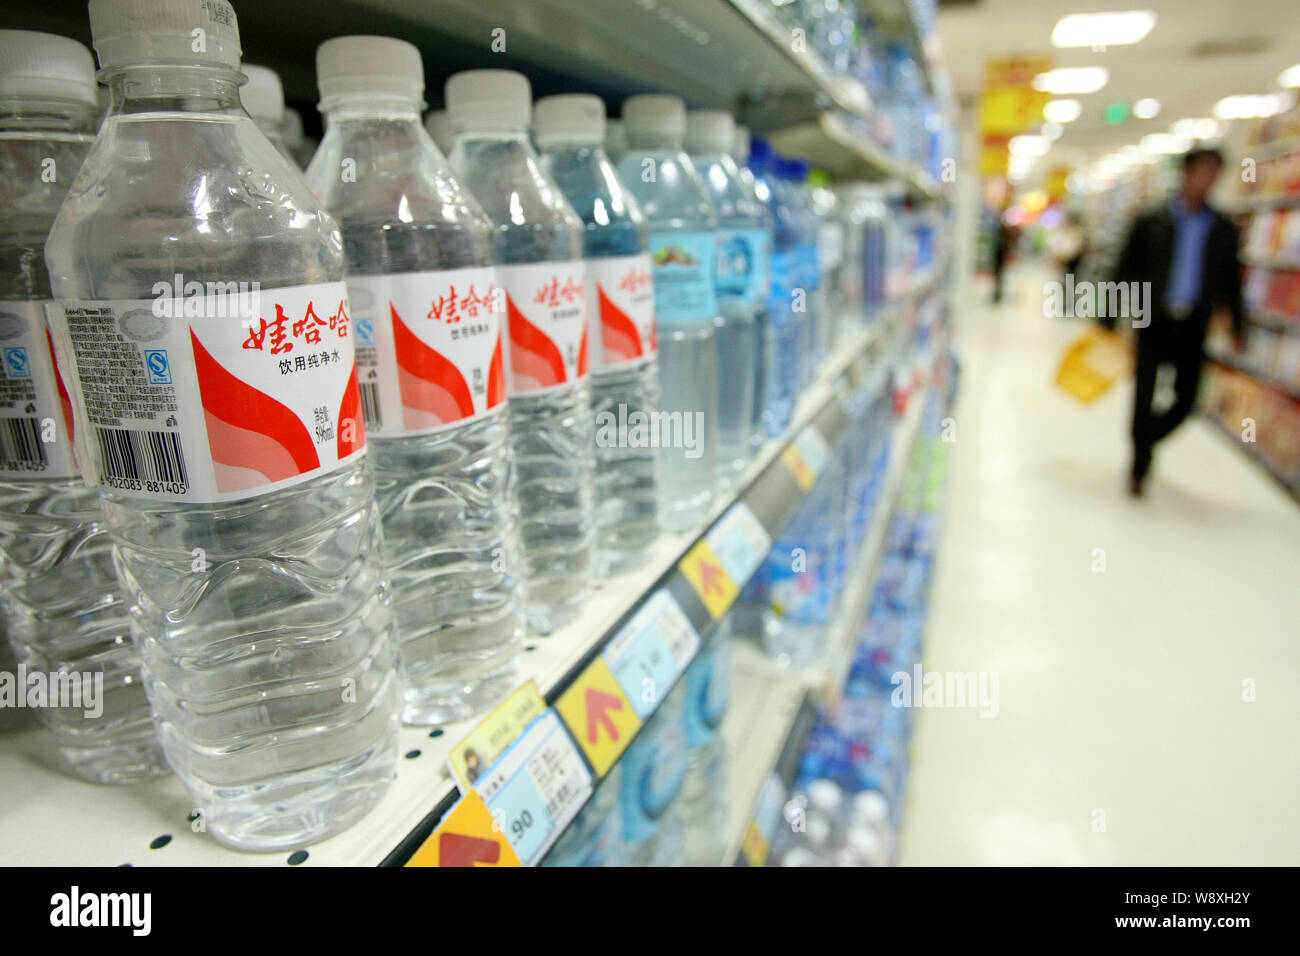 ------ Flaschen Wahaha gereinigtes Wasser sind für den Verkauf in einem Supermarkt in Shanghai, China, 2. Mai 2013. Während einer jährlichen Sales Meeting vor kurzem gehalten, Stockfoto